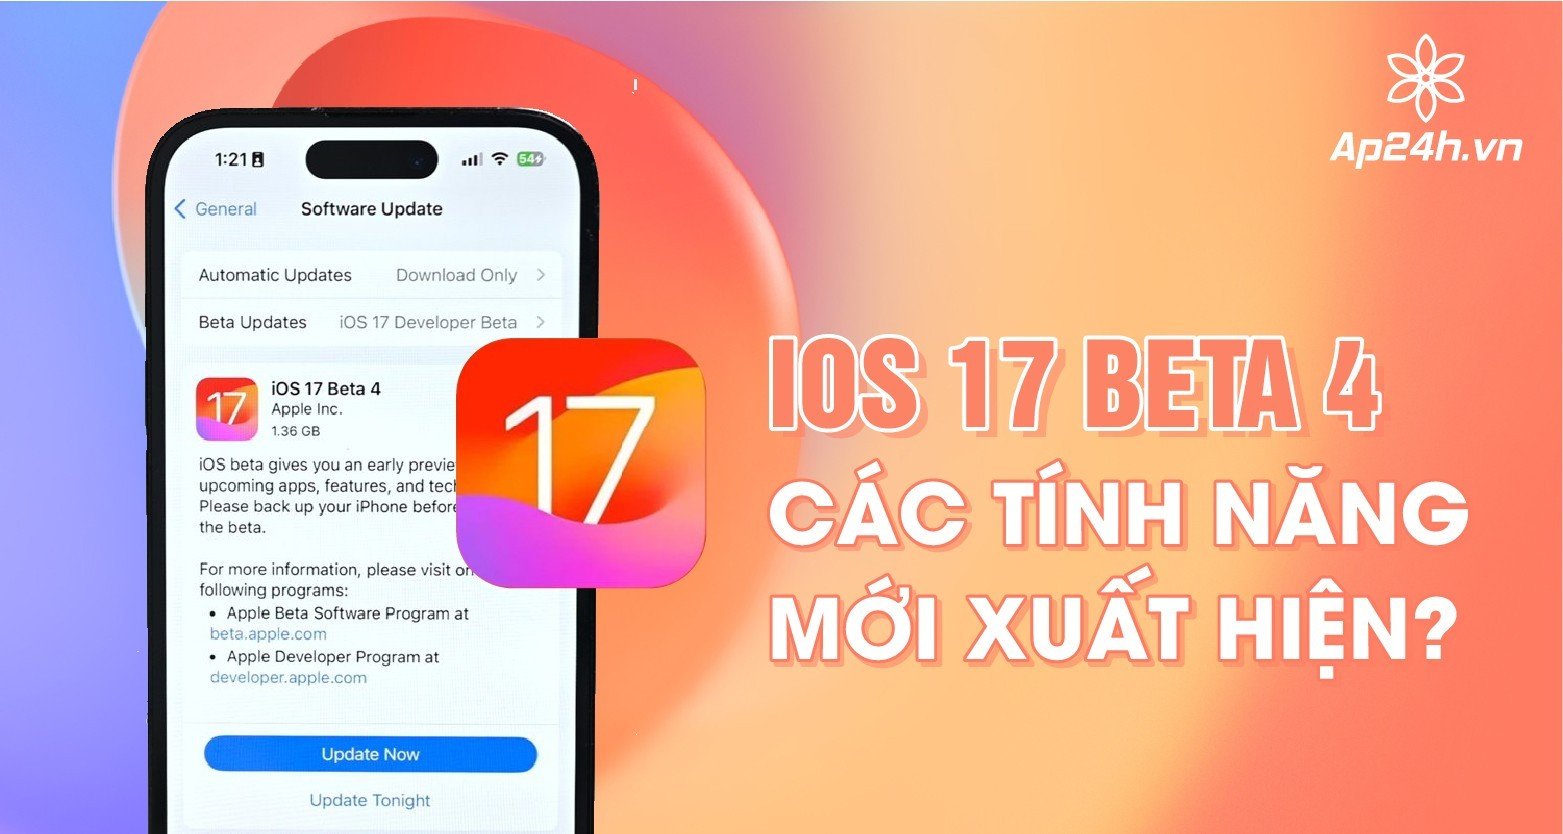 iOS 17 beta 4 - Các tính năng mới xuất hiện